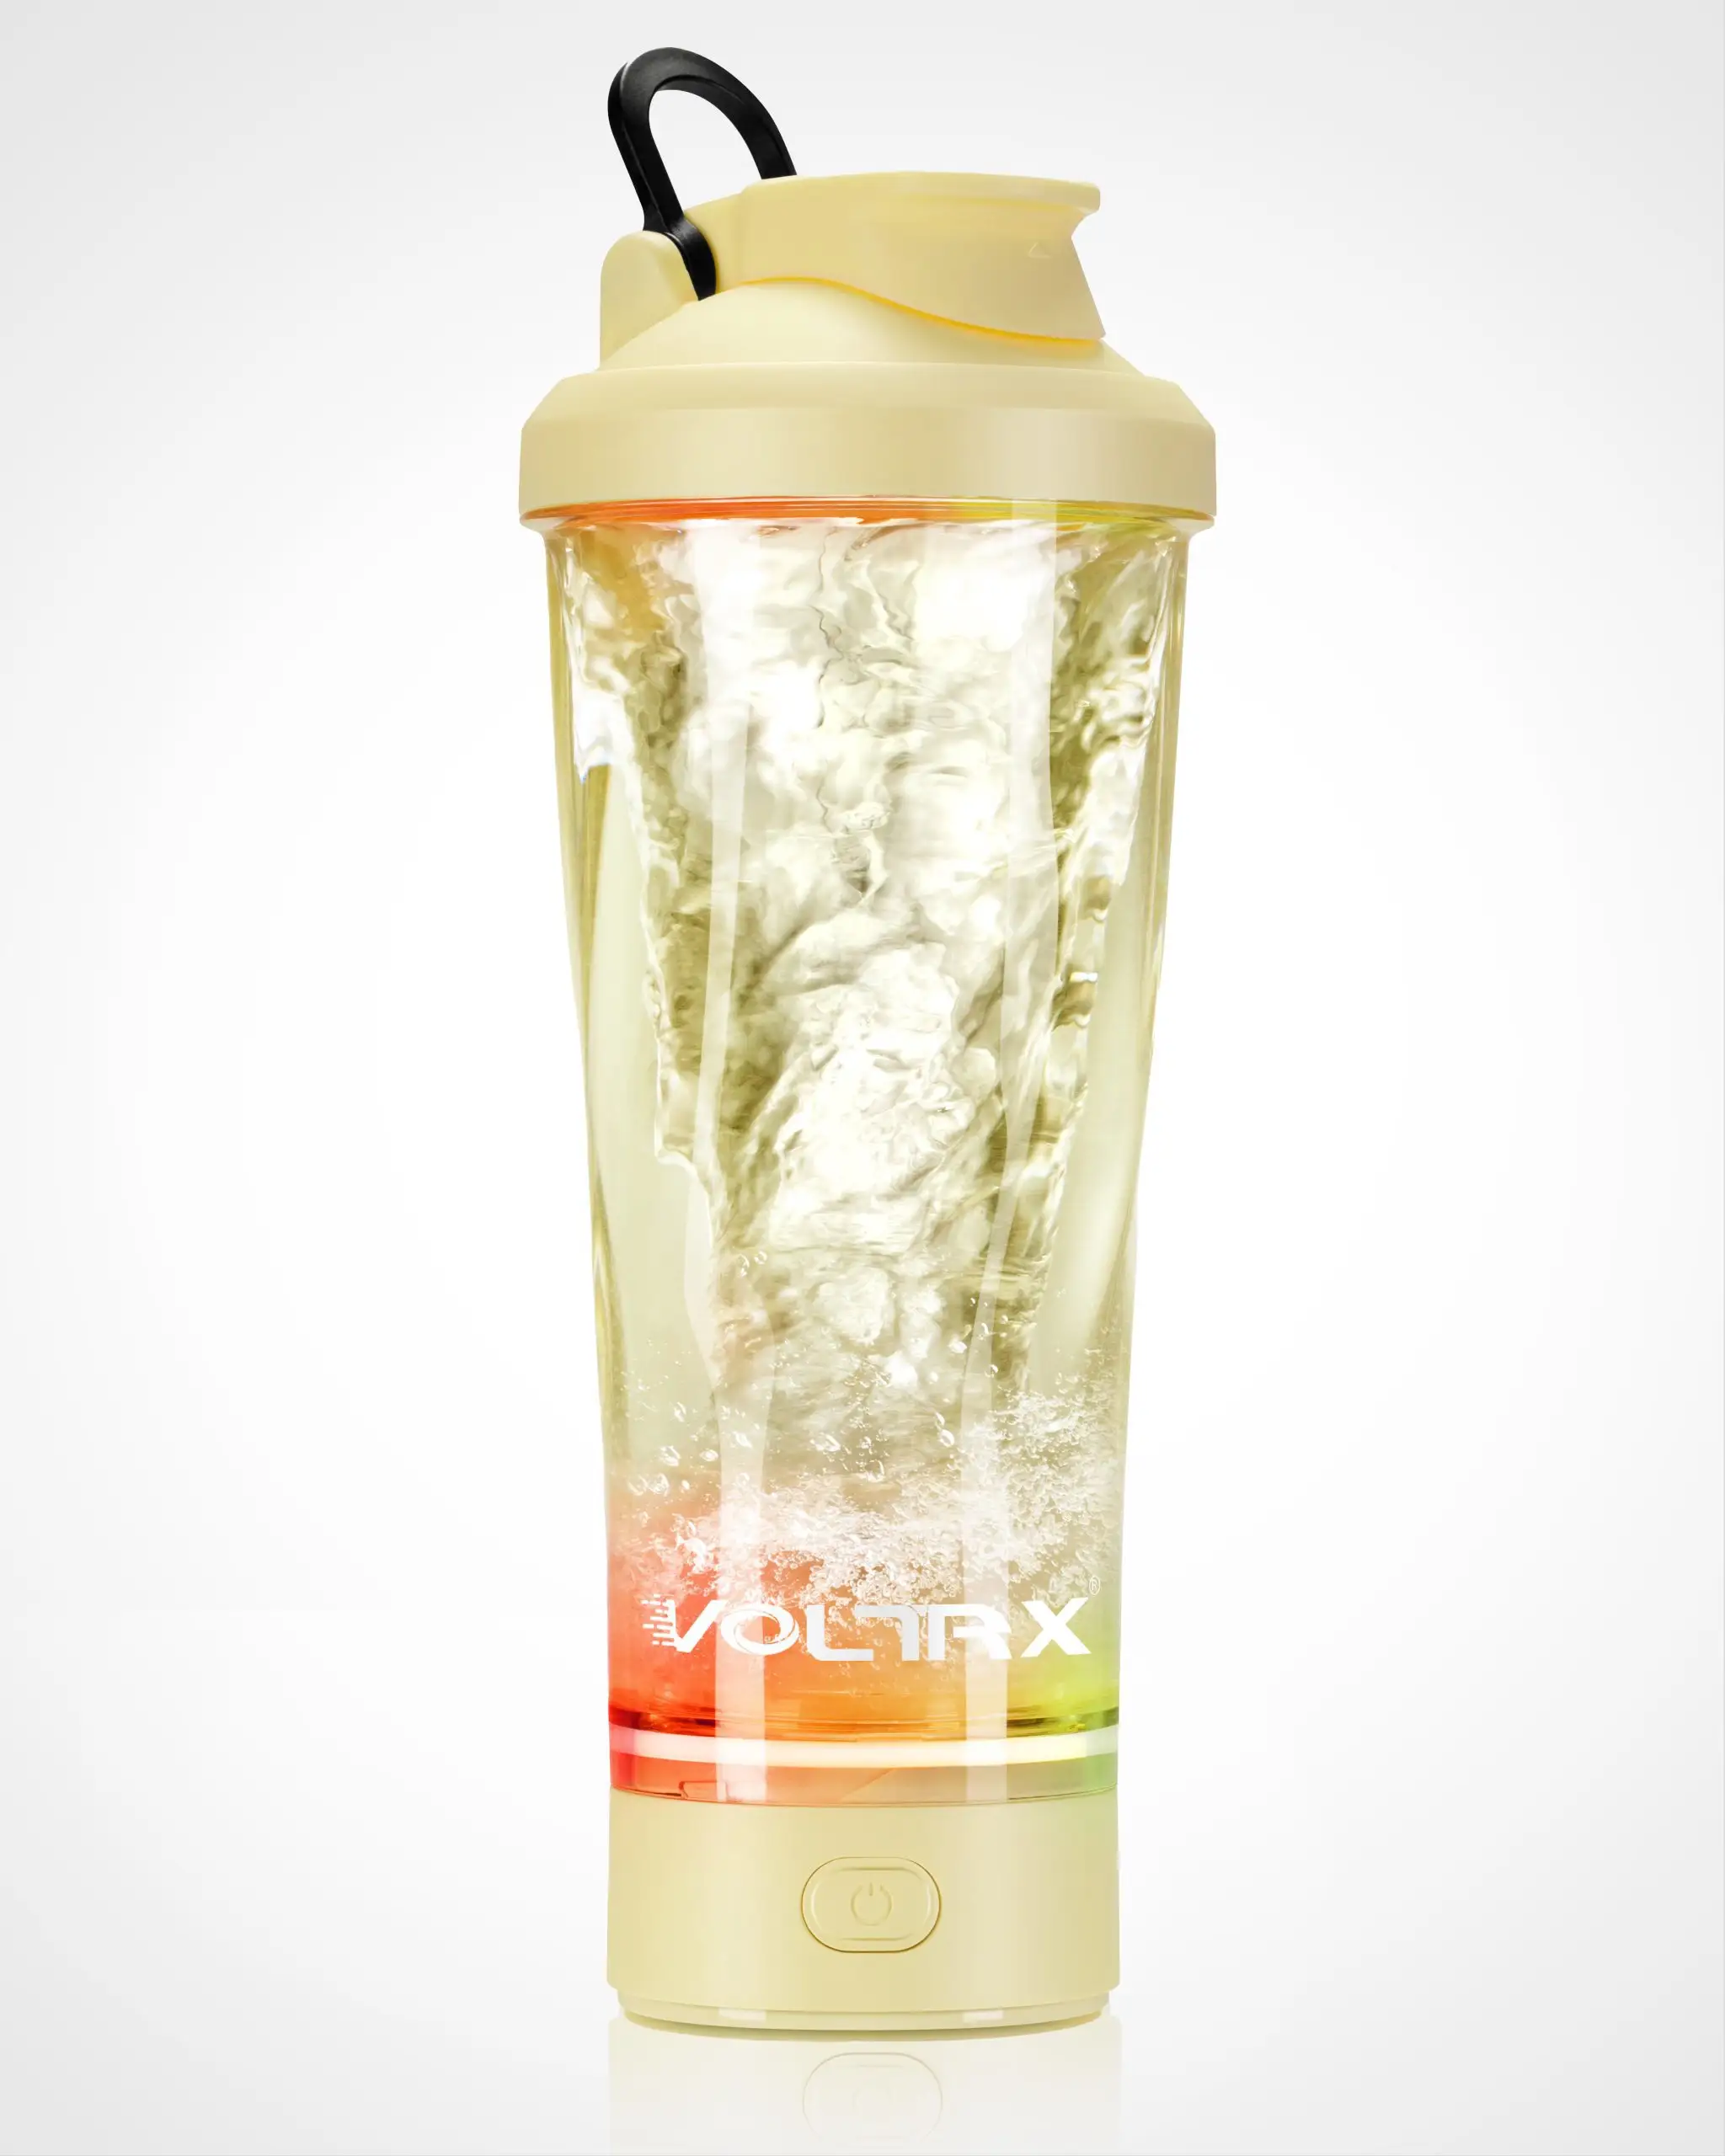 Voltrx garrafa elétrica recarregável, copo portátil usb para misturar shakes de proteína, 700ml 24oz